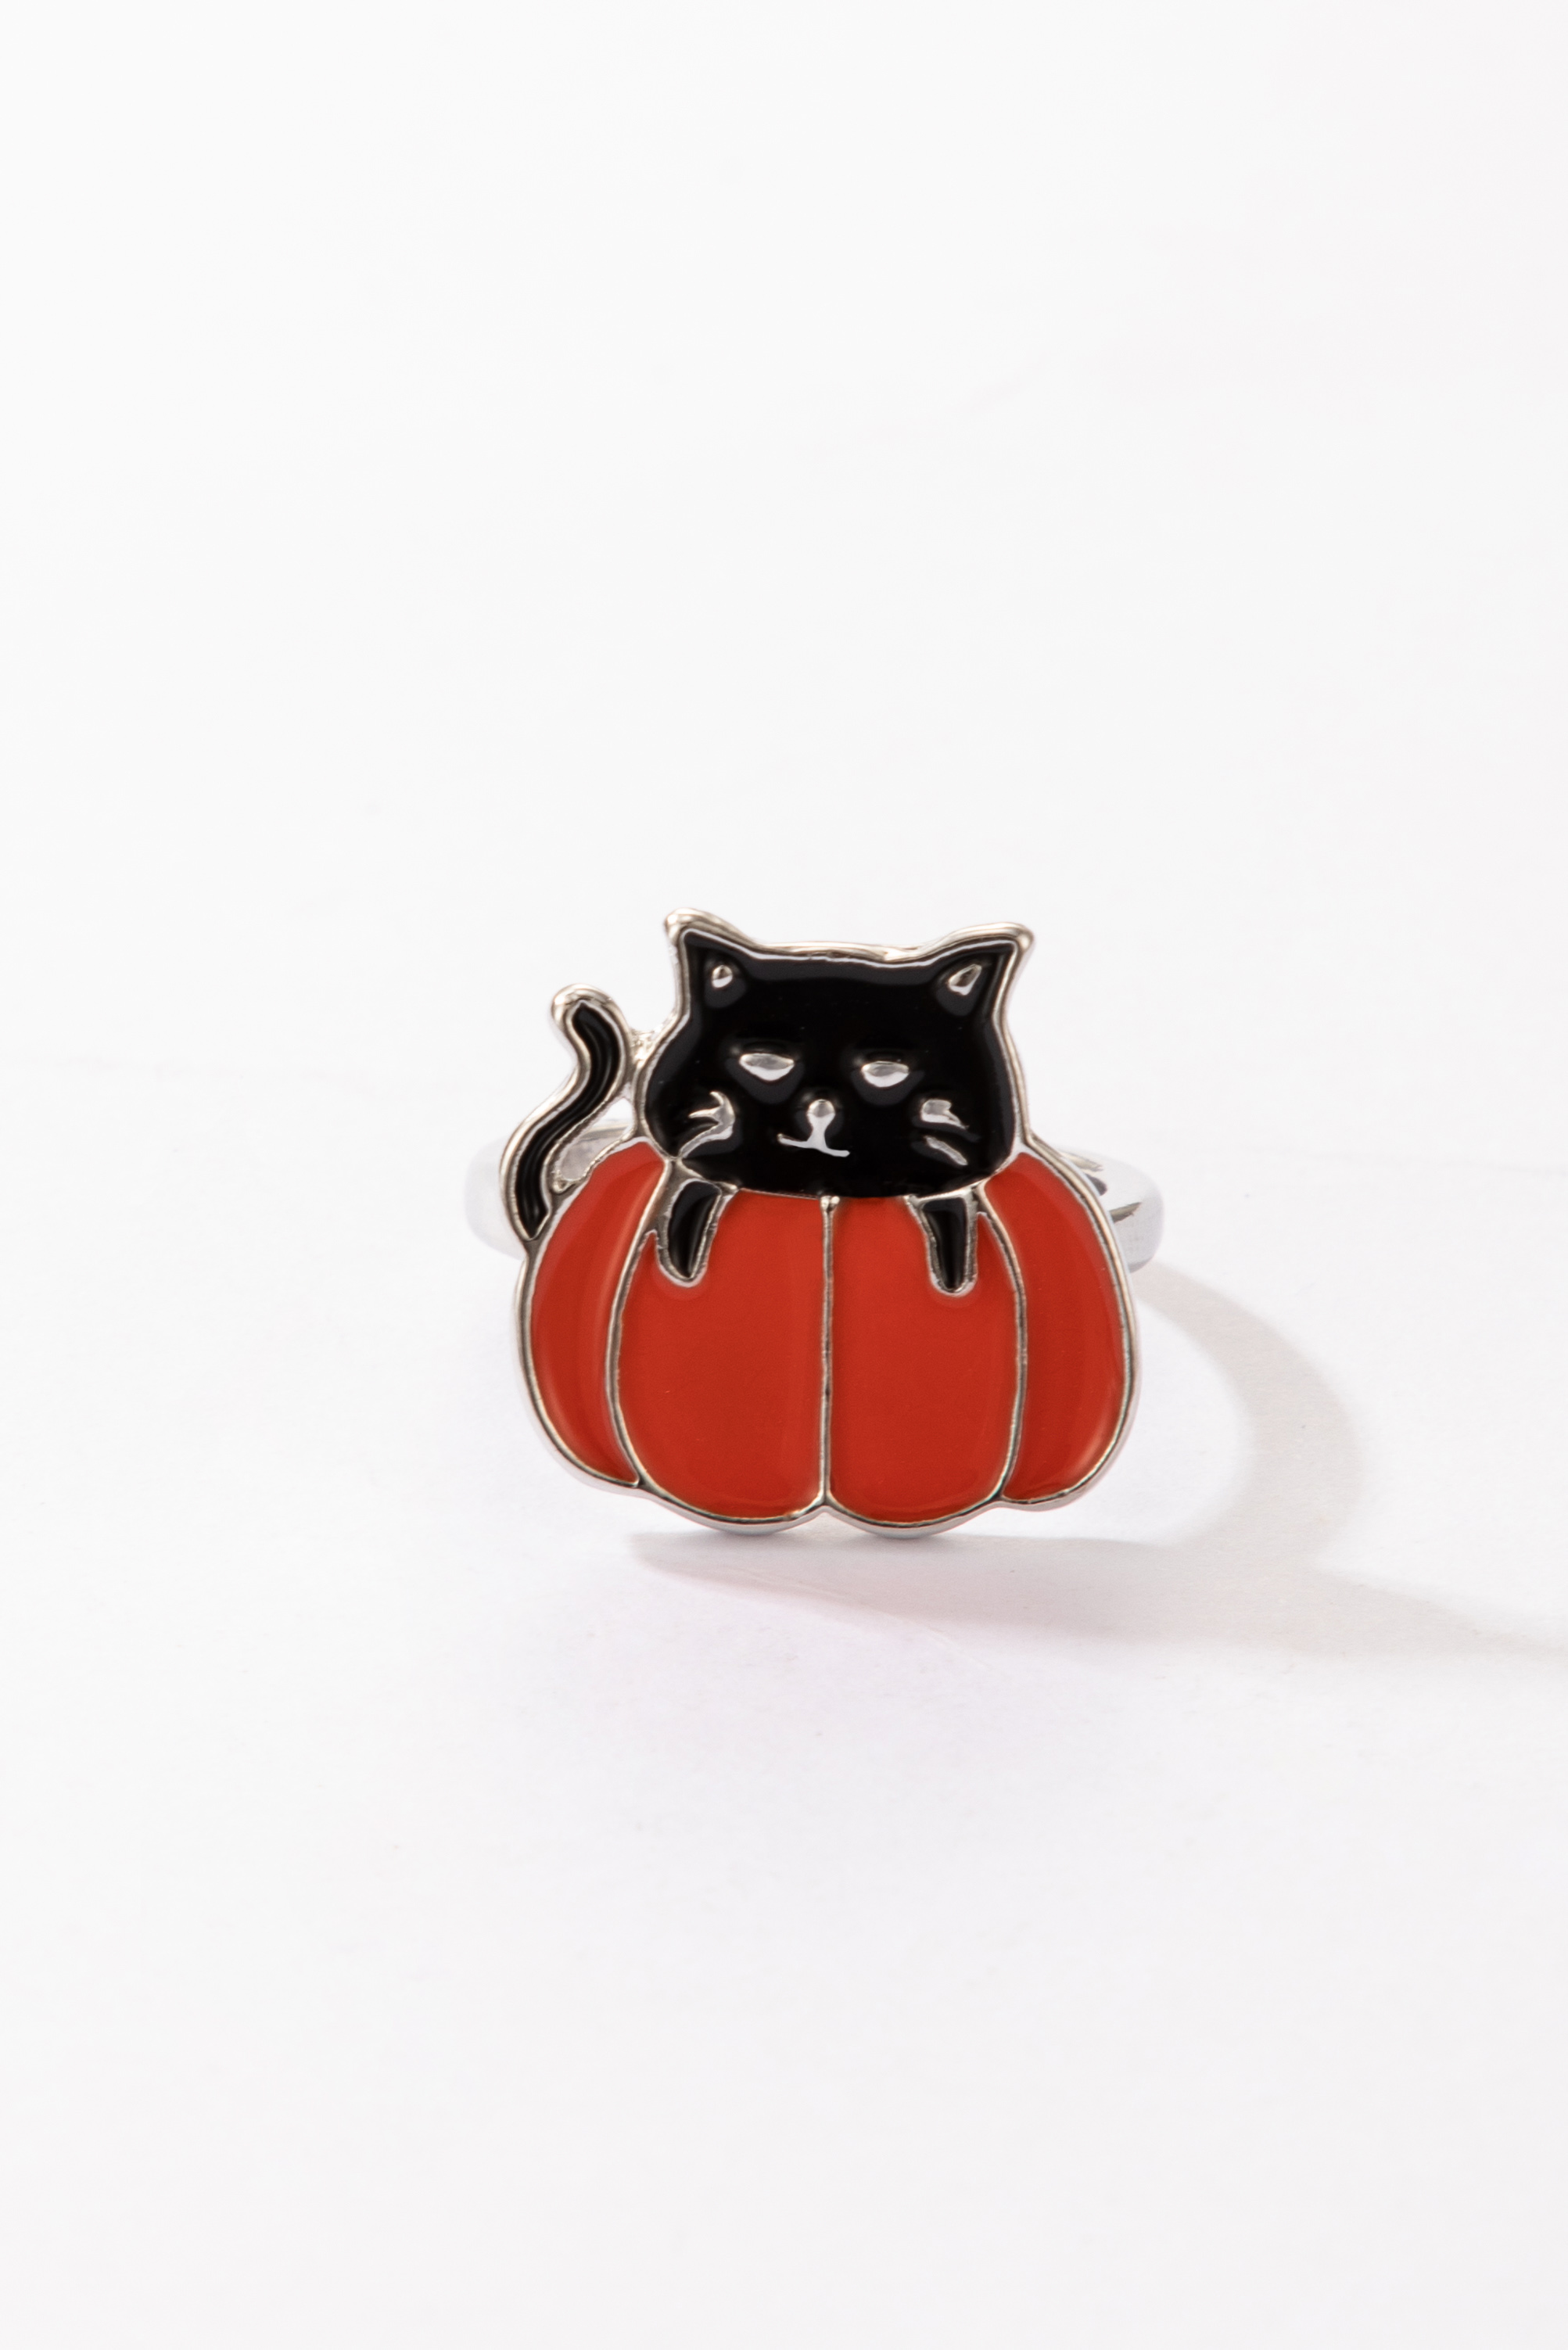 2021 nueva joyera anillo de gato naranja de Halloweenpicture8